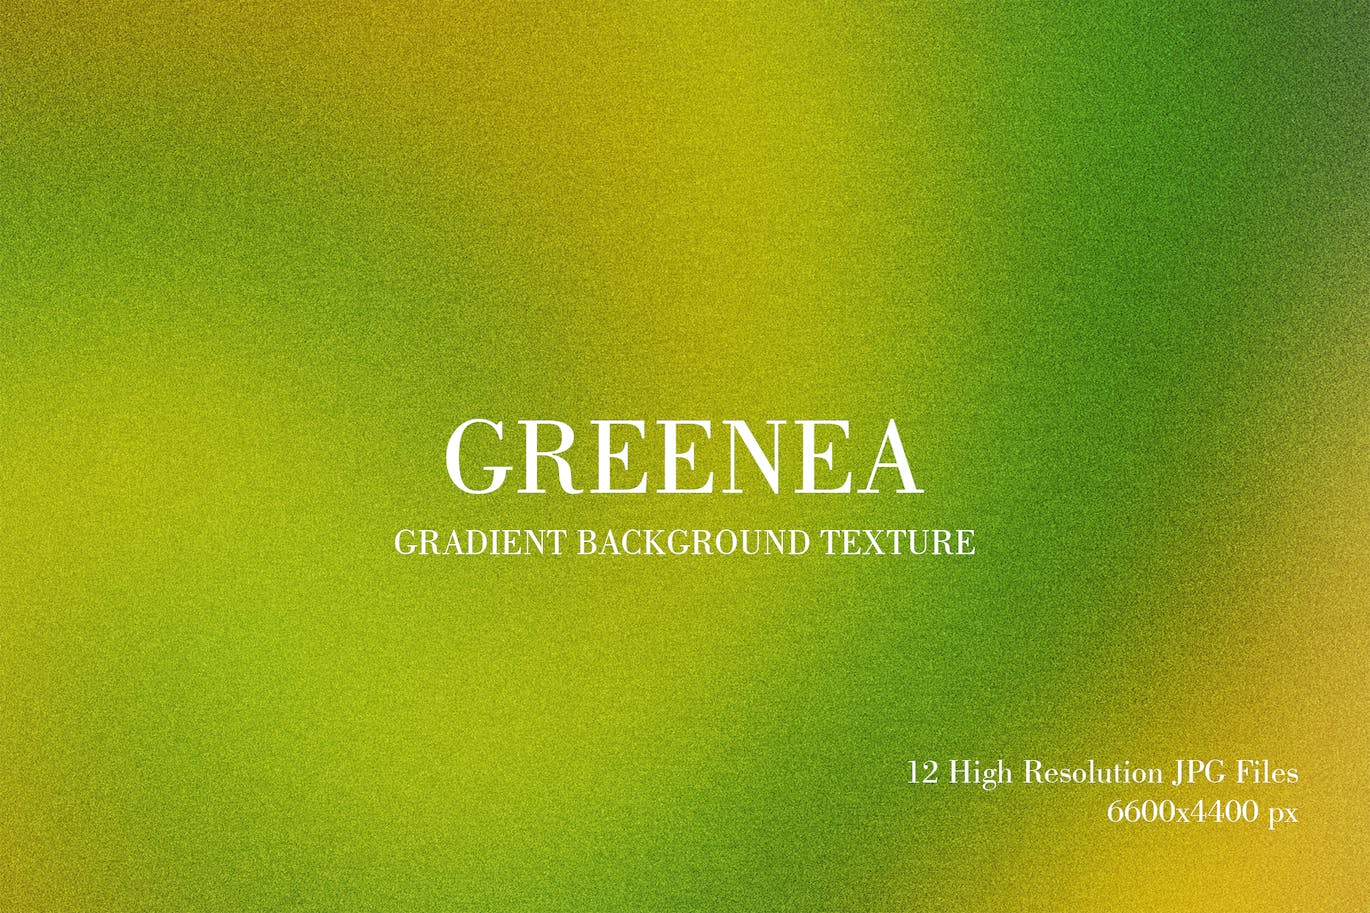 绿色渐变背景纹理 Greenea Gradient Background Texture 图片素材 第1张